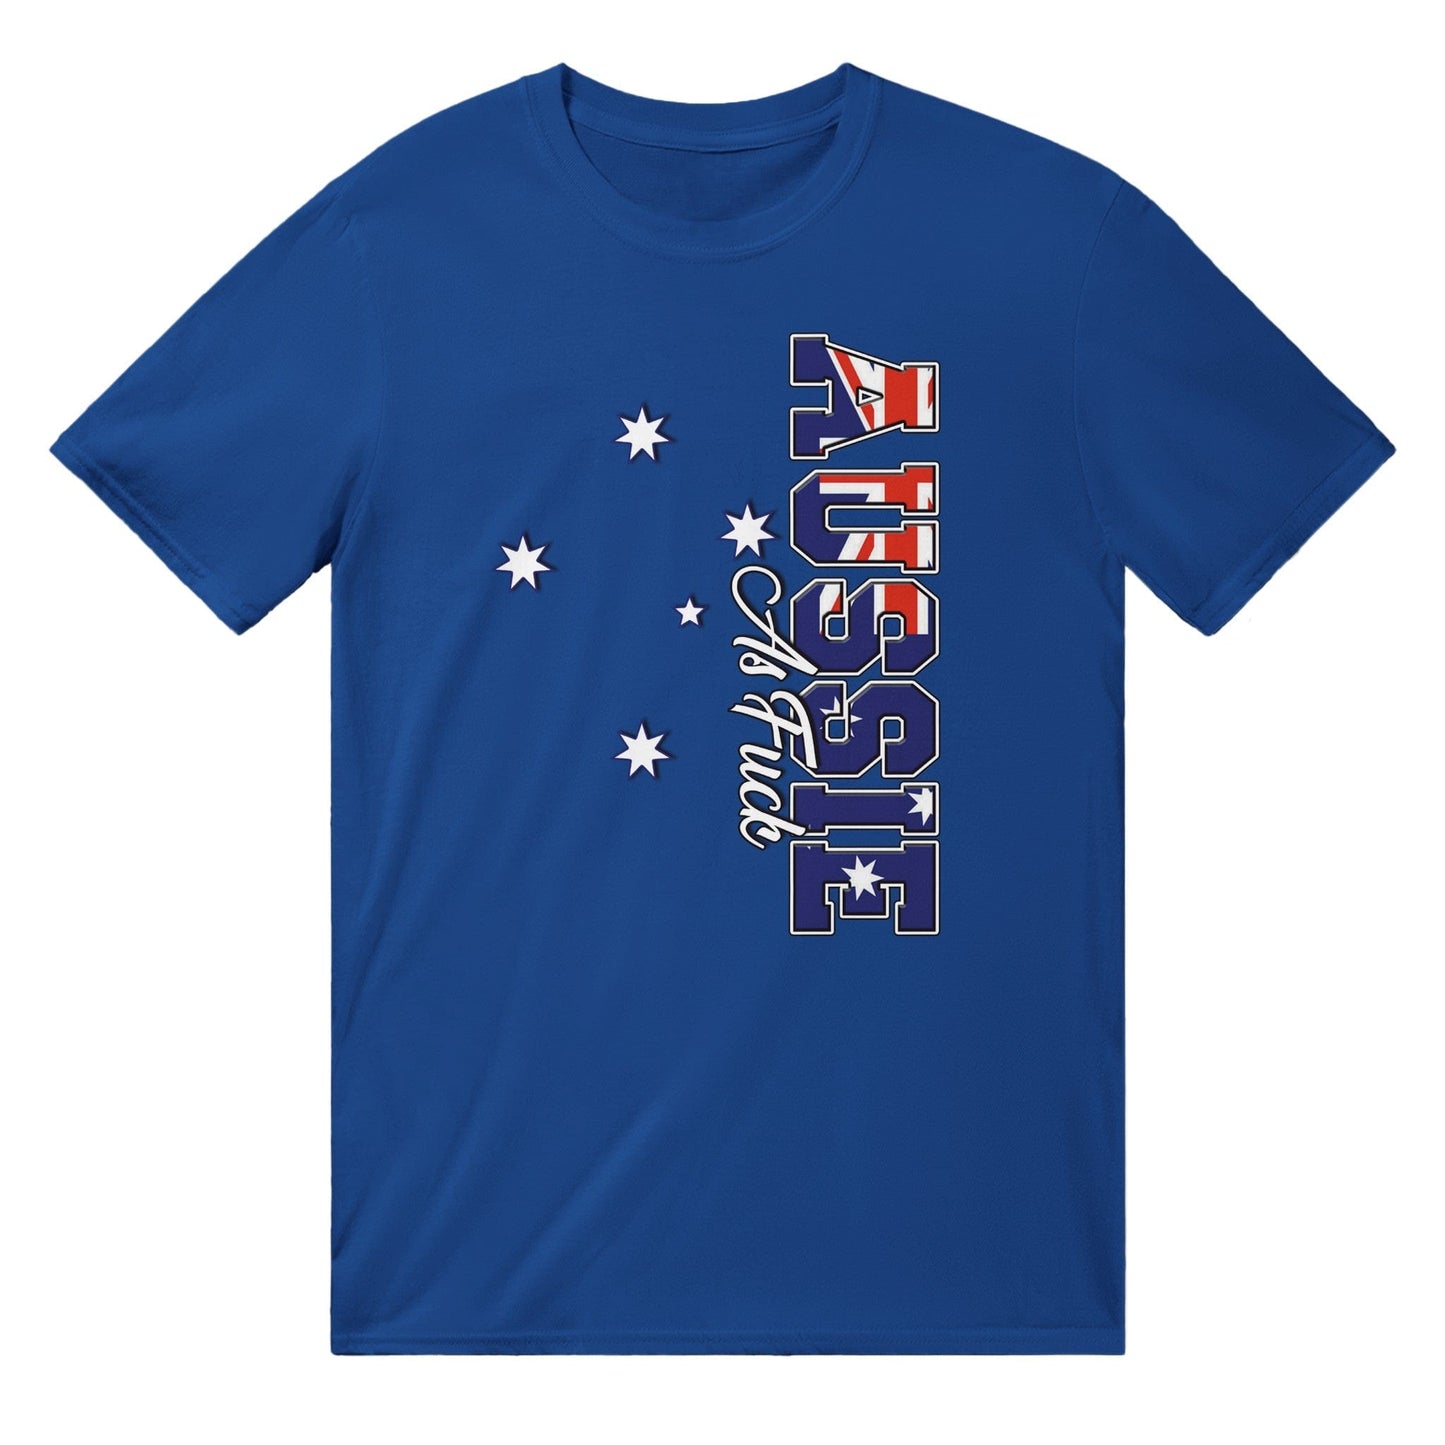 Aussie As Fuck T-shirt Australia Online Color Royal / S